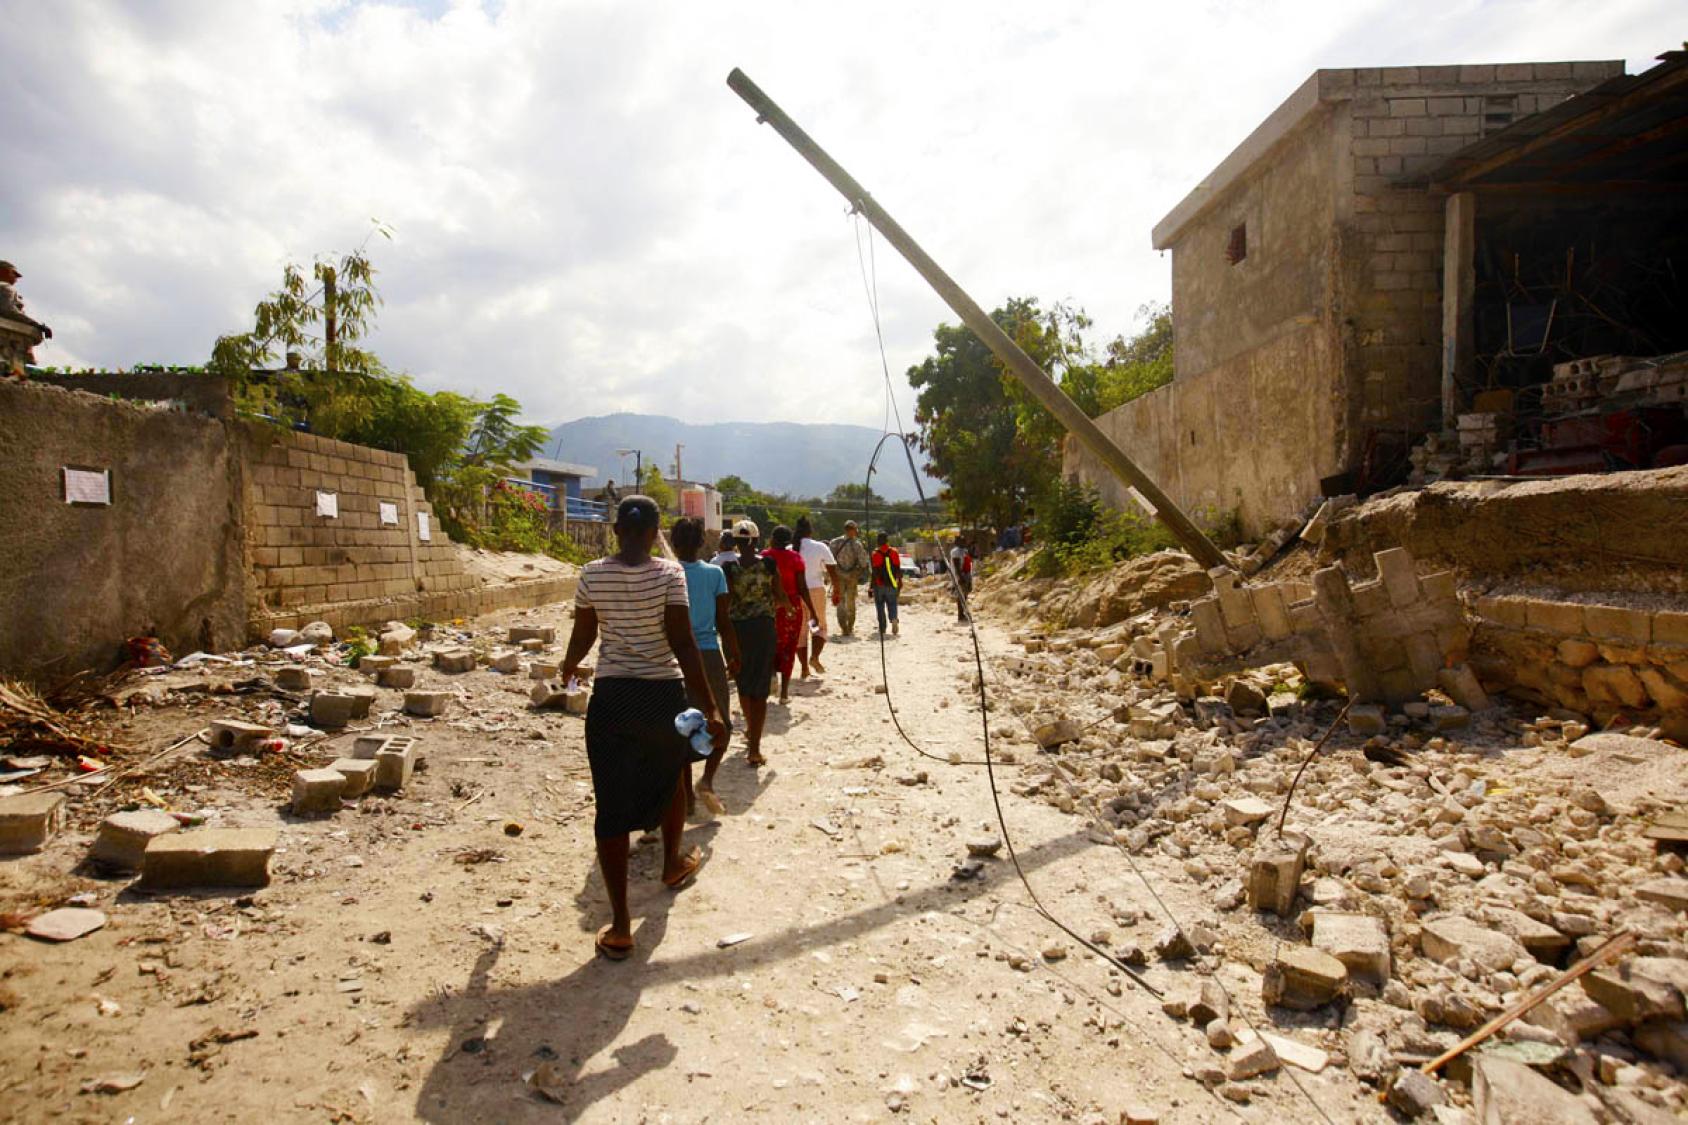 A Port-au-Prince, la capitale d'Haïti, des femmes marchent les unes derrières les autres, dos à la caméra, dans une rue bordée d’habitations entièrement détruites par le tremblement de terre survenu dans le pays en 2010.